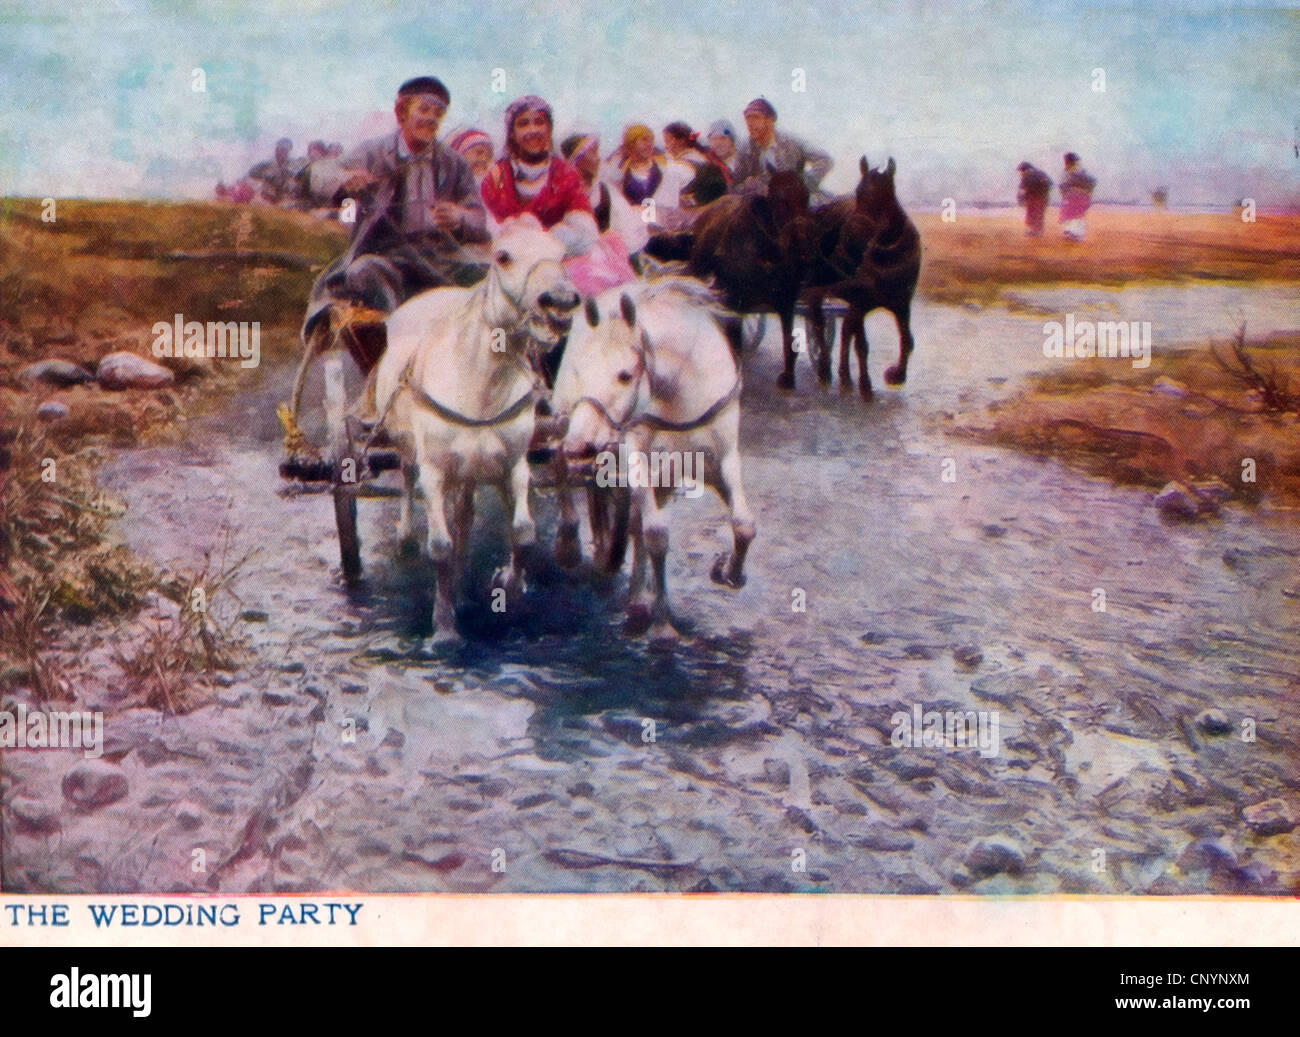 Die Hochzeit Partei - frisch verheiratetes Paar - Vintage Postkarte zeigt paar in Pferdekutsche Stockfoto